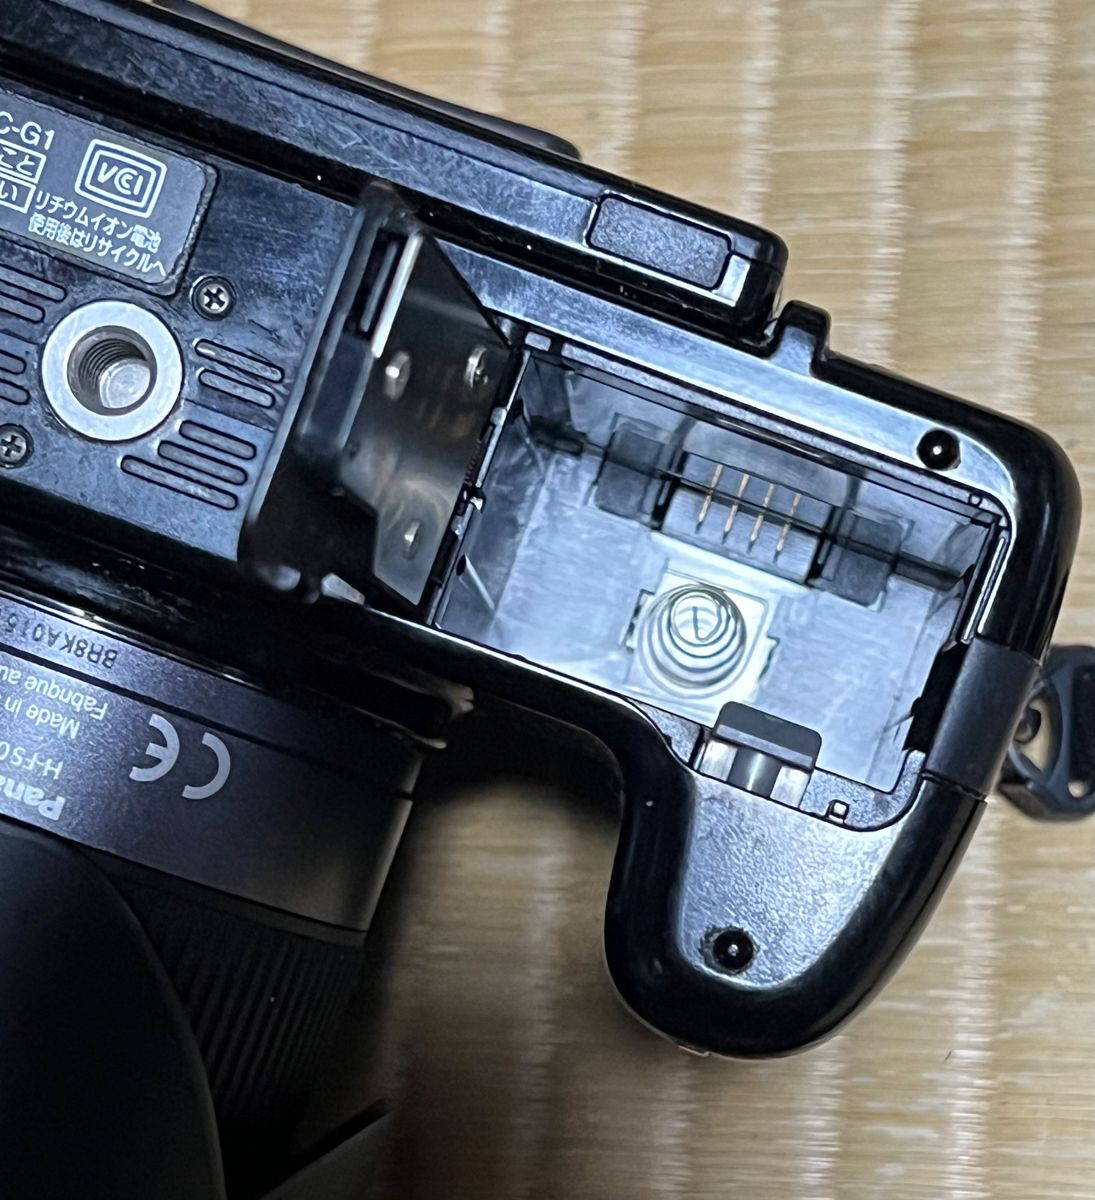 Panasonic LUMIX G1 VALIO14-45mmレンズ付き　ユーズド デジタル一眼レフカメラ